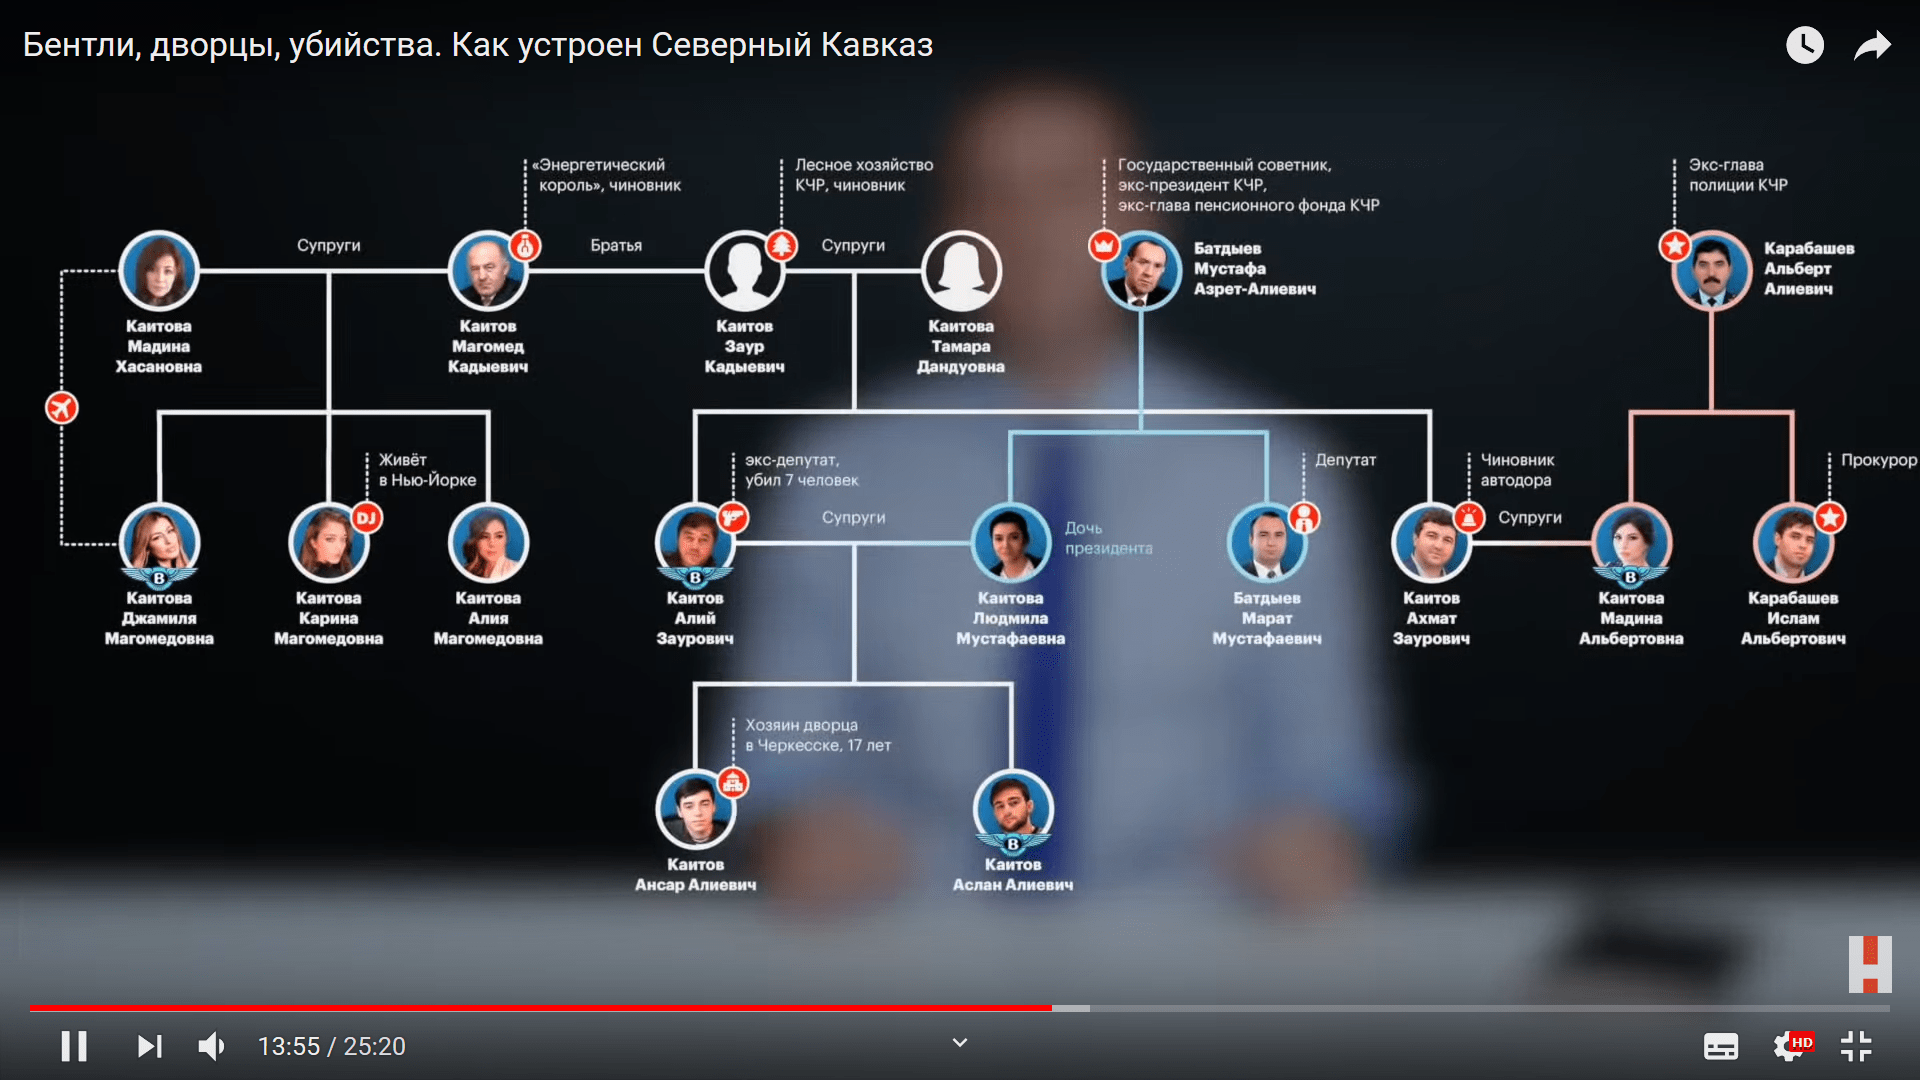 Схема клановых связей высокопоставленных чиновников Карачаево-Черкесии, обнародованная Навальным в рамках расследования ФБК. https://www.youtube.com/watch?v=LWdAfYKJSKA&feature=youtu.be